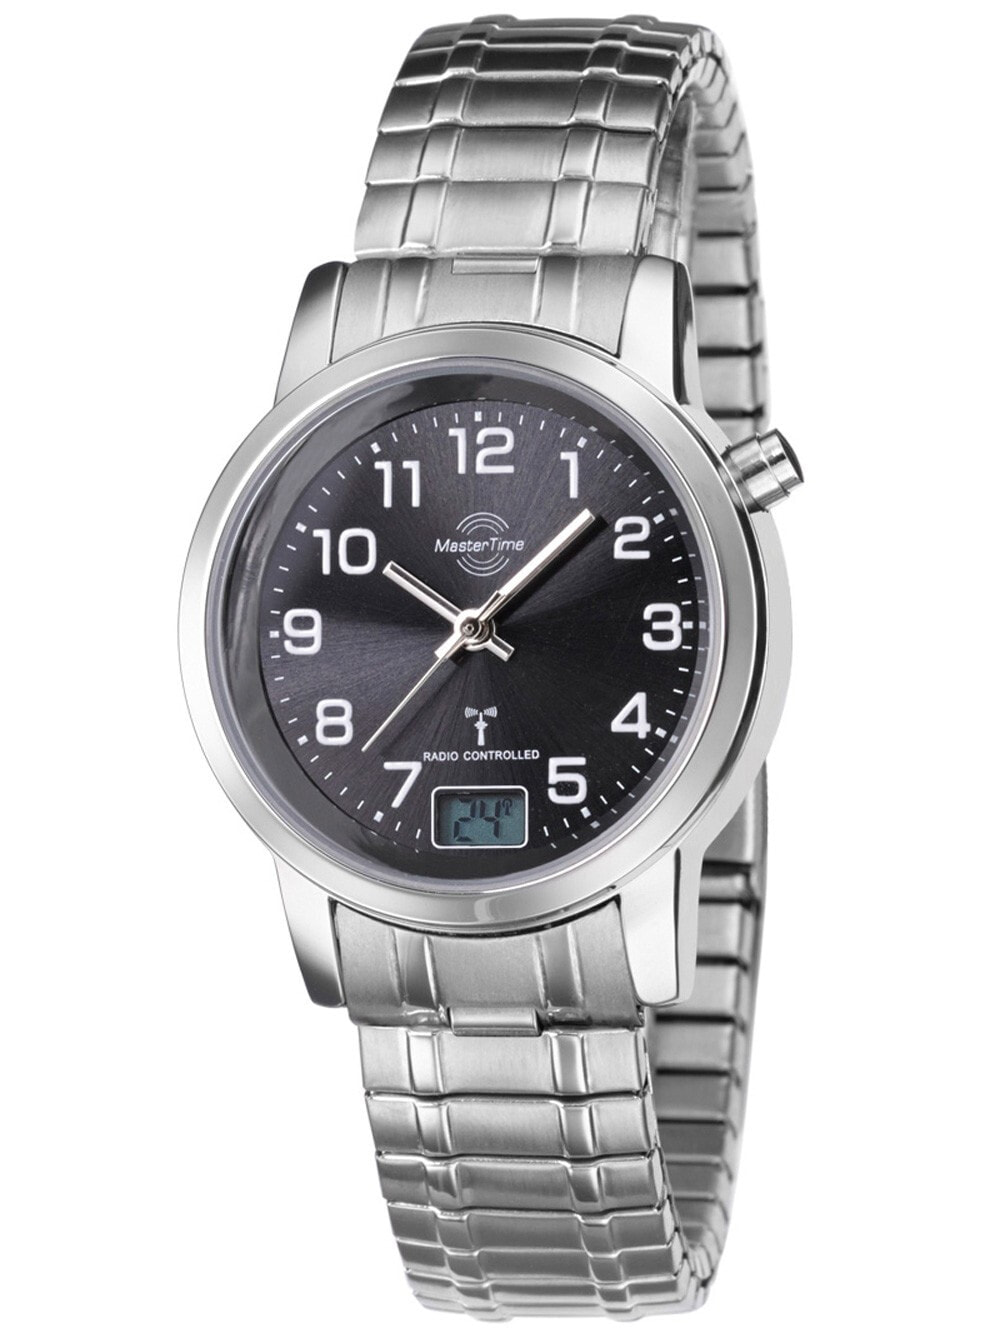 Женские наручные кварцевые часы MASTER TIME  с арабскими цифрами, ремешком из нержавеющей стали и цифровым дисплеем даты. Часы водонепроницаемы до 3 бар.